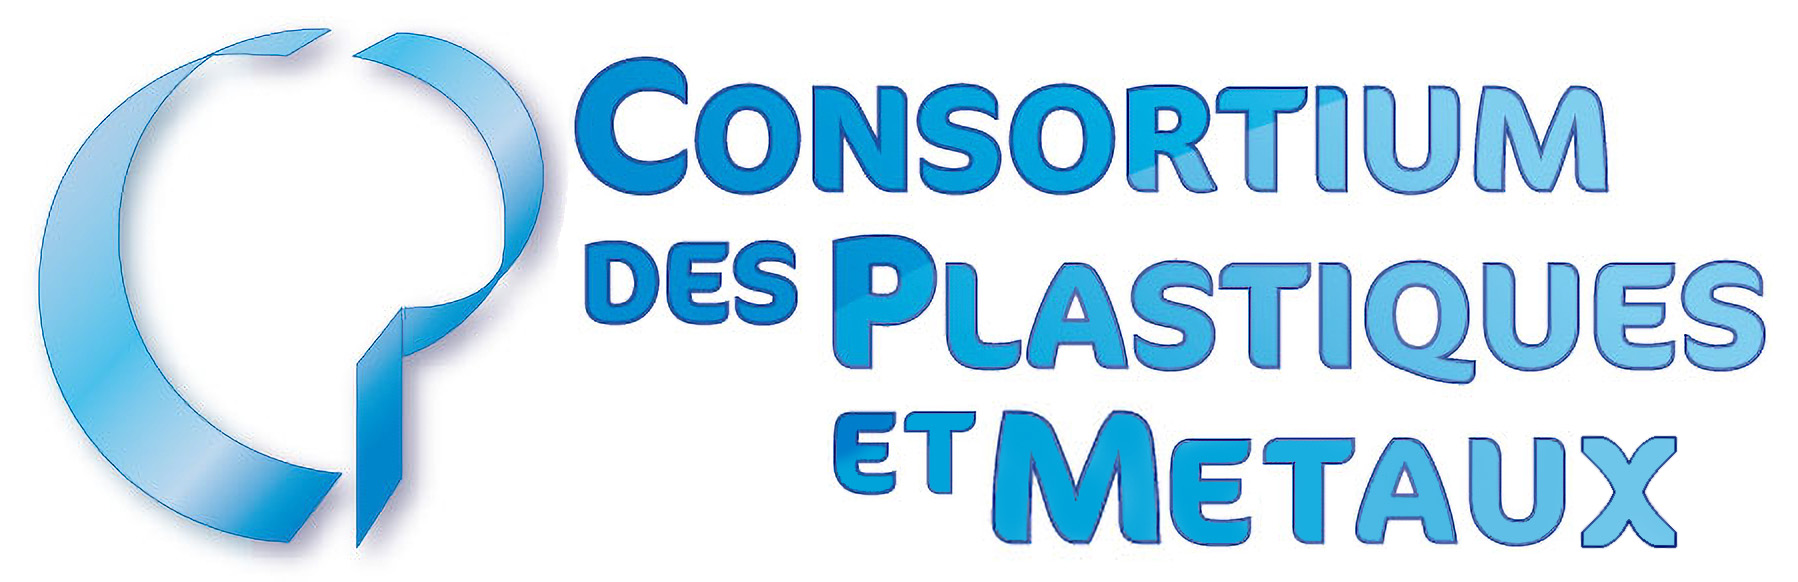 Consortium des plastique et metaux